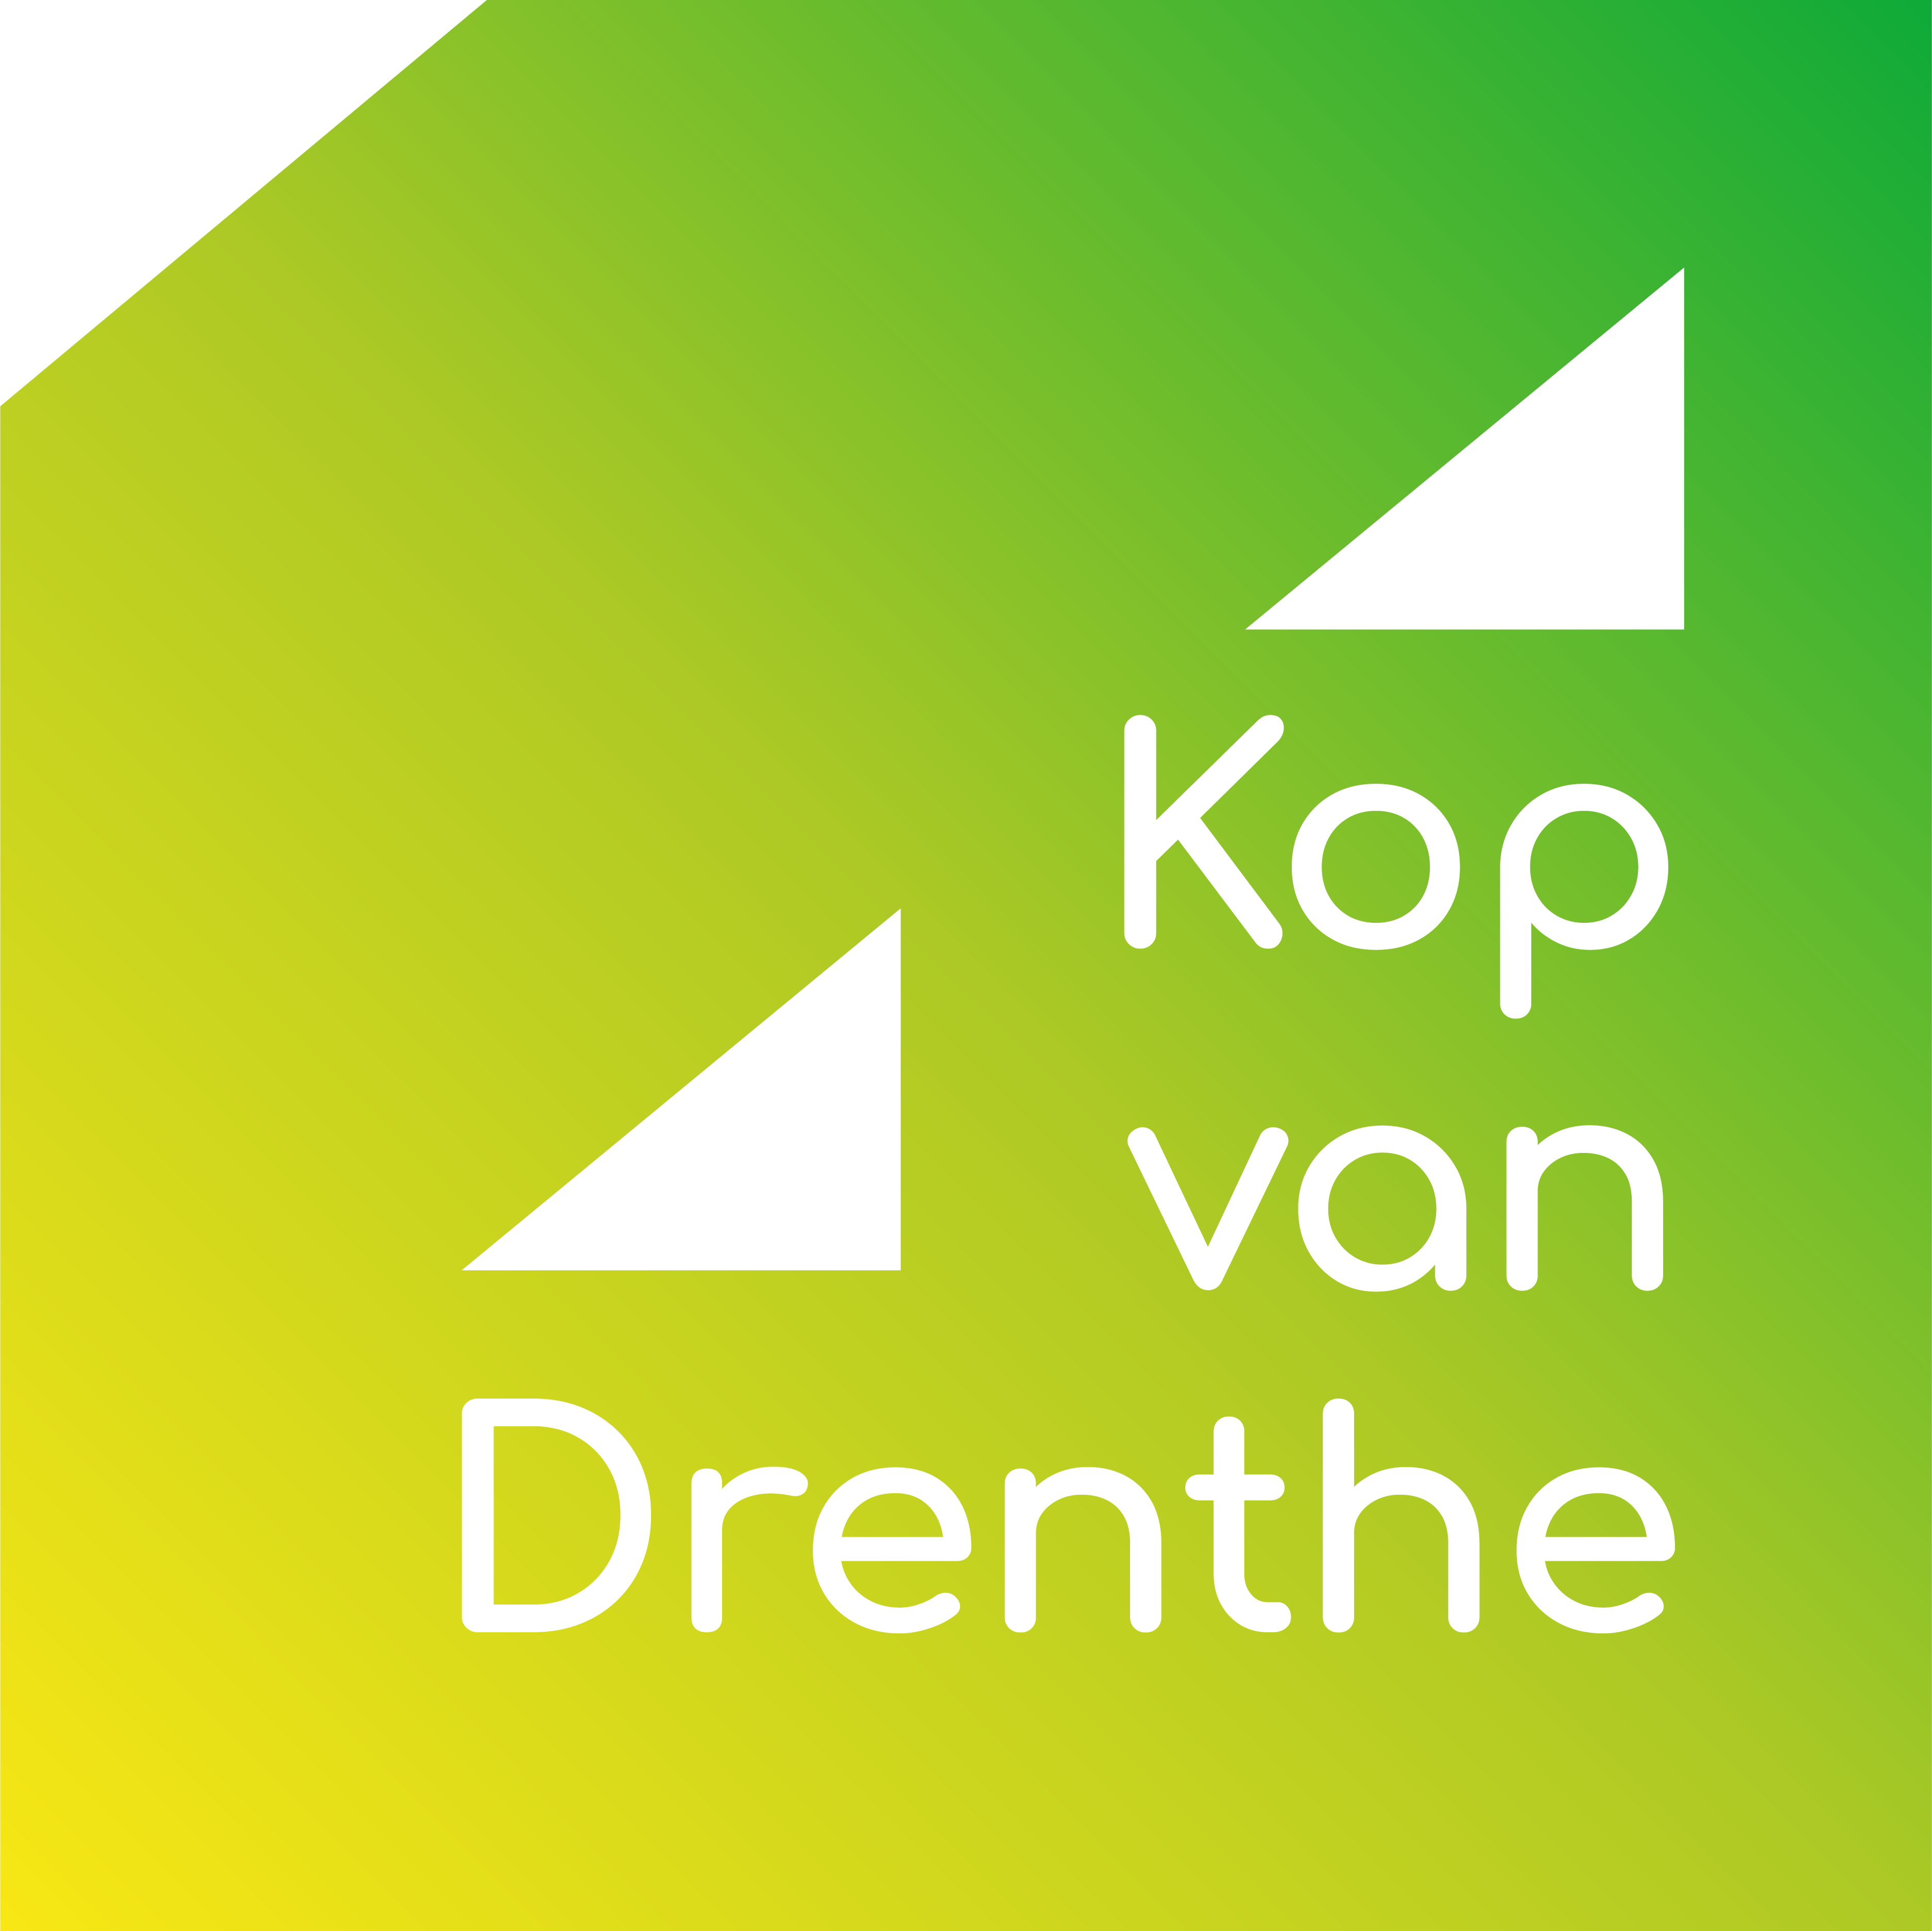 Stichting Kop van Drenthe